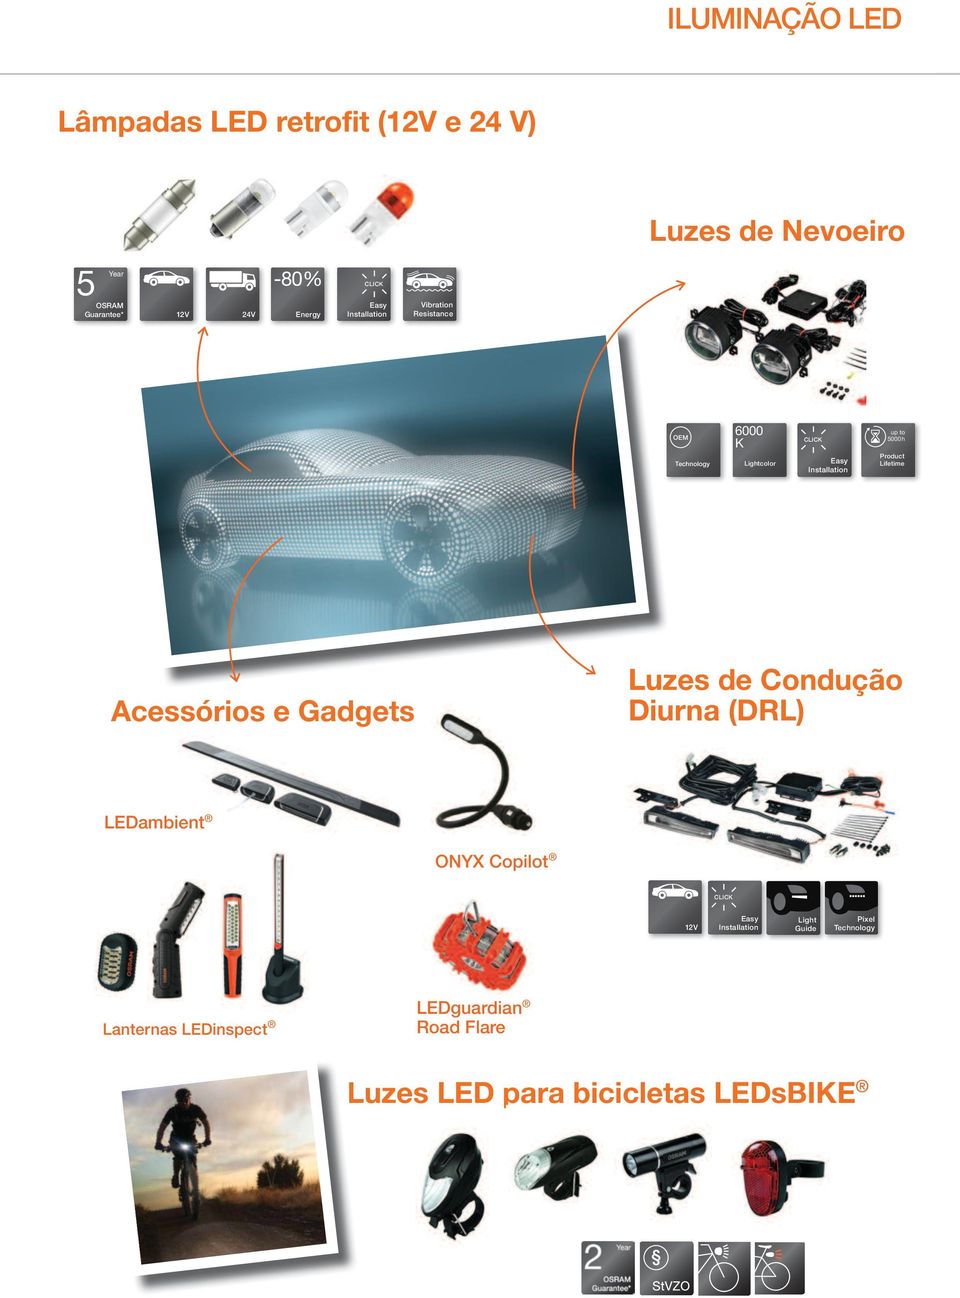 to 5000h Product Lifetime Acessórios e Gadgets Luzes de Condução Diurna (DRL) LEDambient ONYX Copilot CLICK 12V